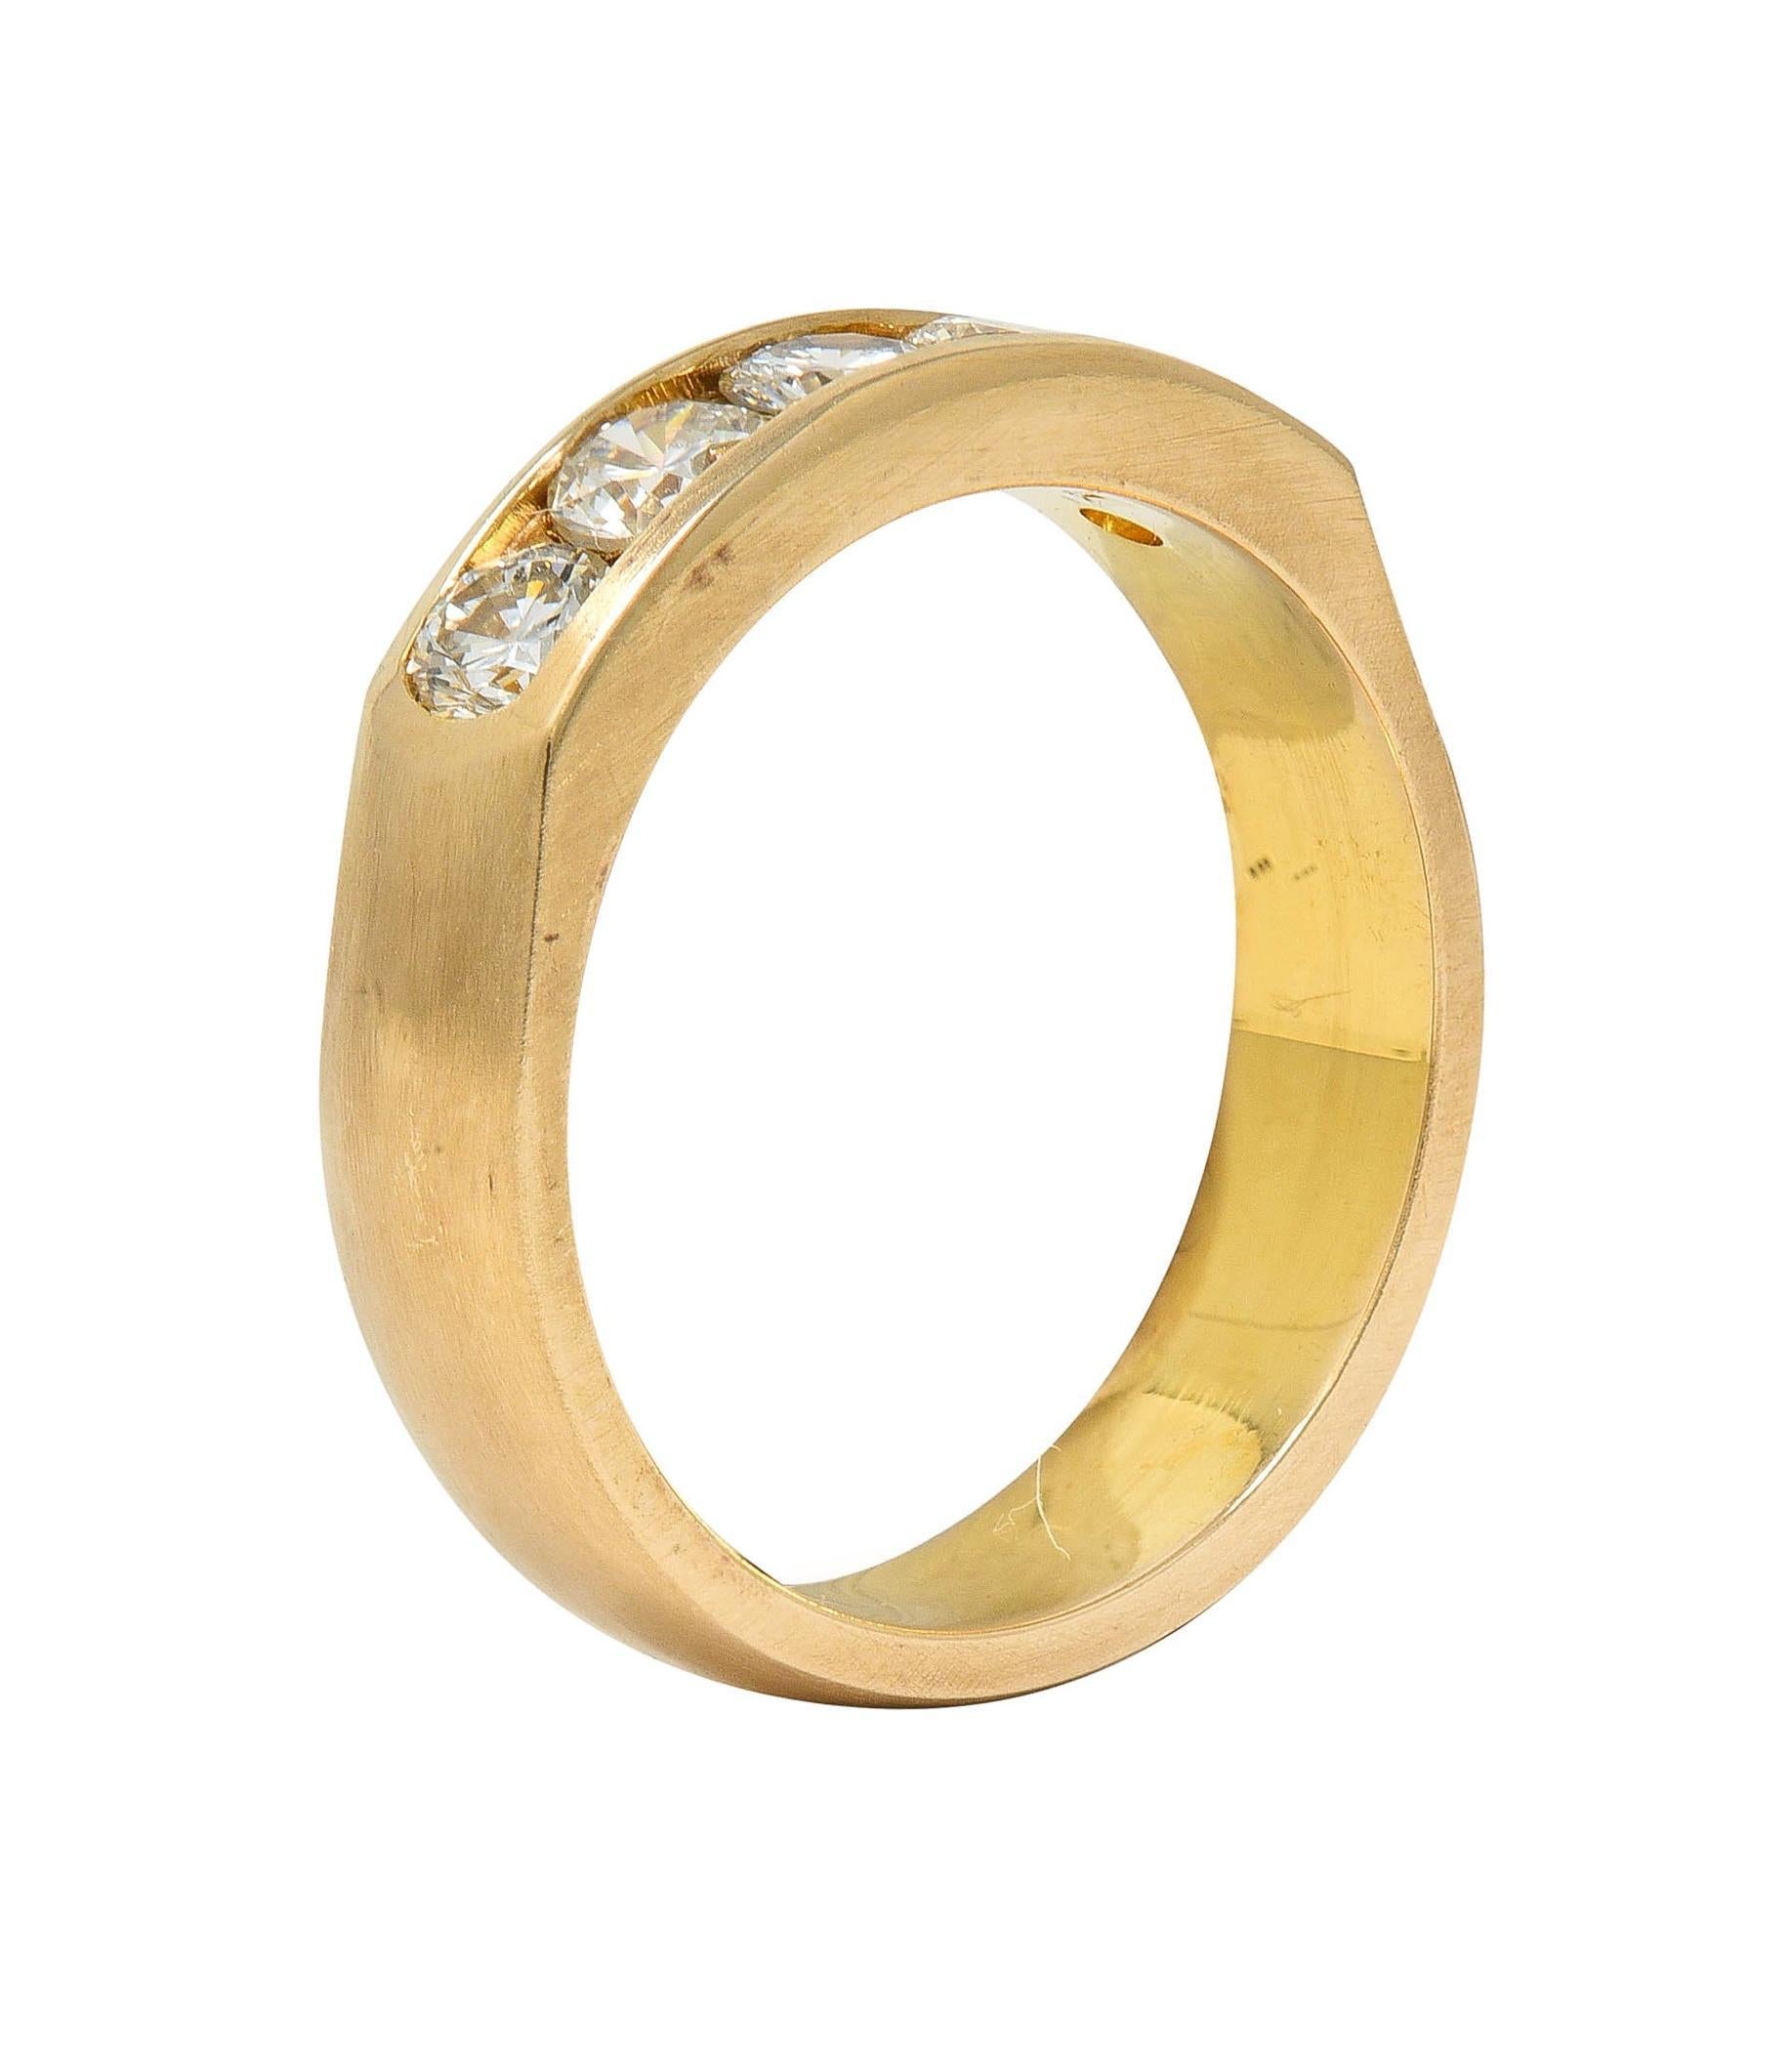 Vintage 0.80 CTW Transitional Cut Diamond 14 Karat Yellow Gold Band Ring 4